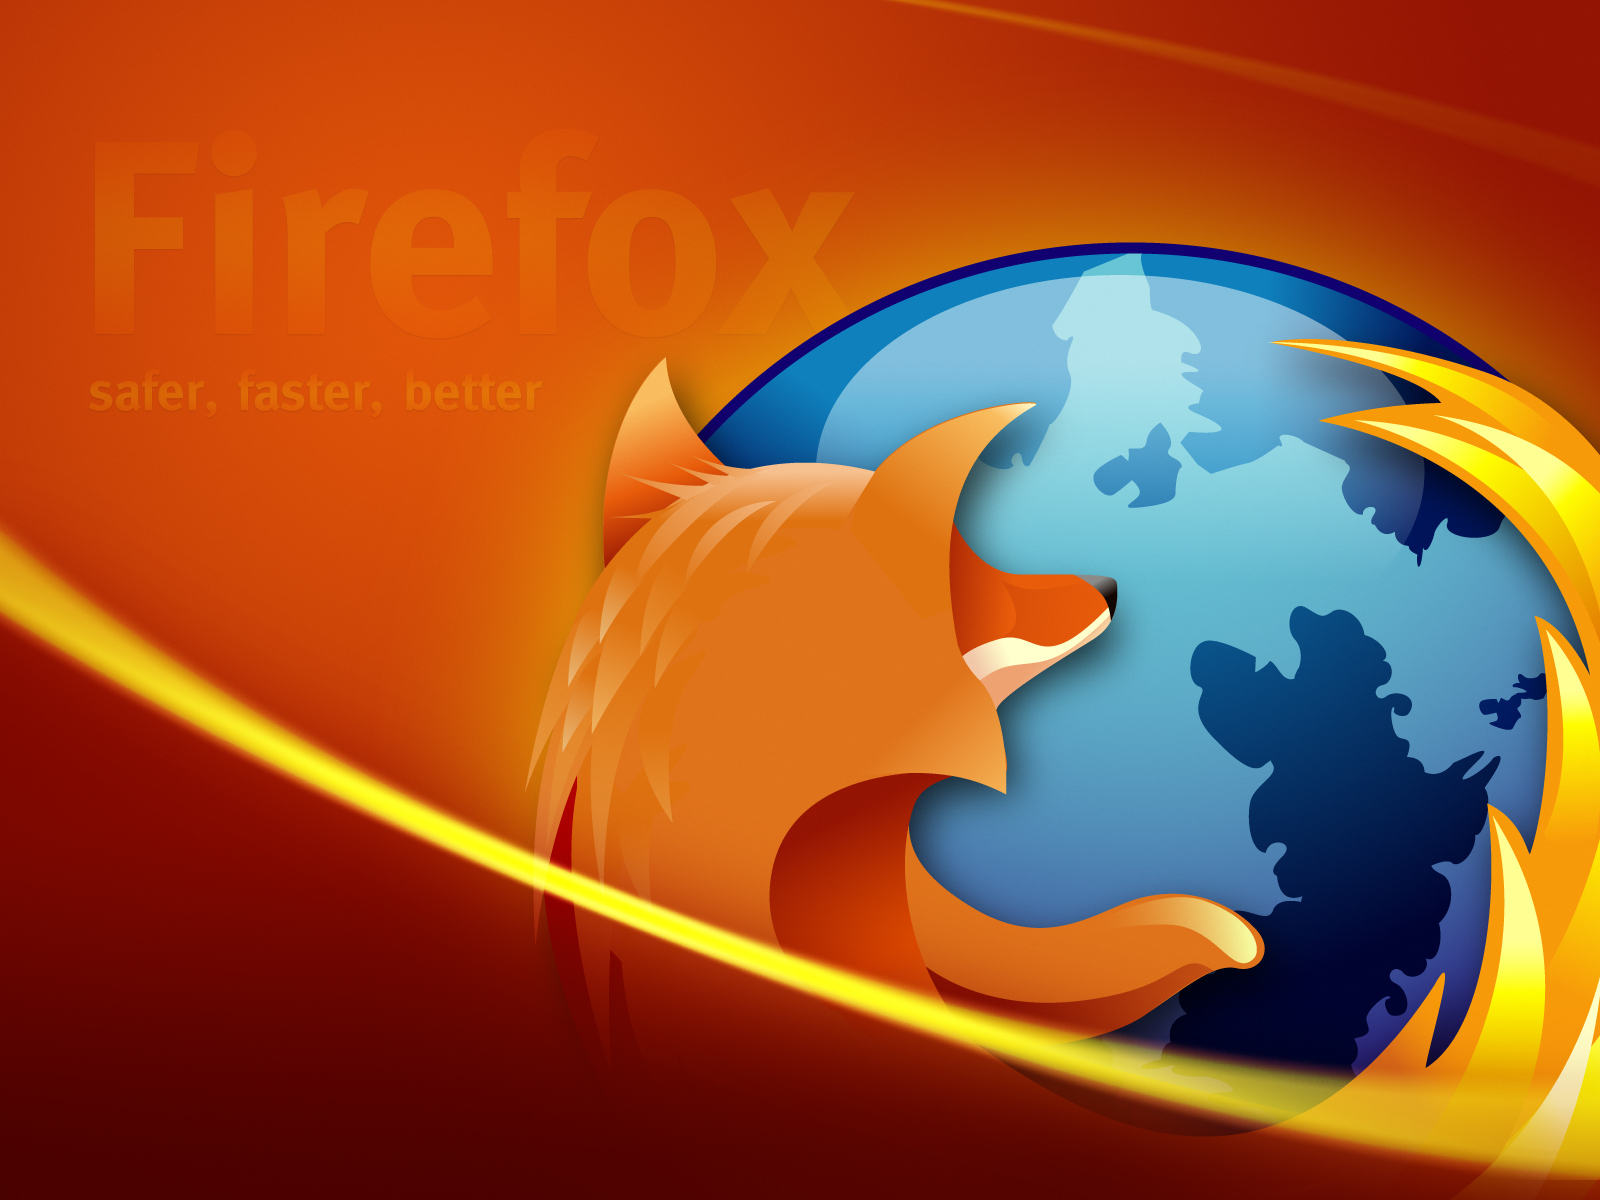 3d обои Firefox  safe, faster, better  лисы # 51173